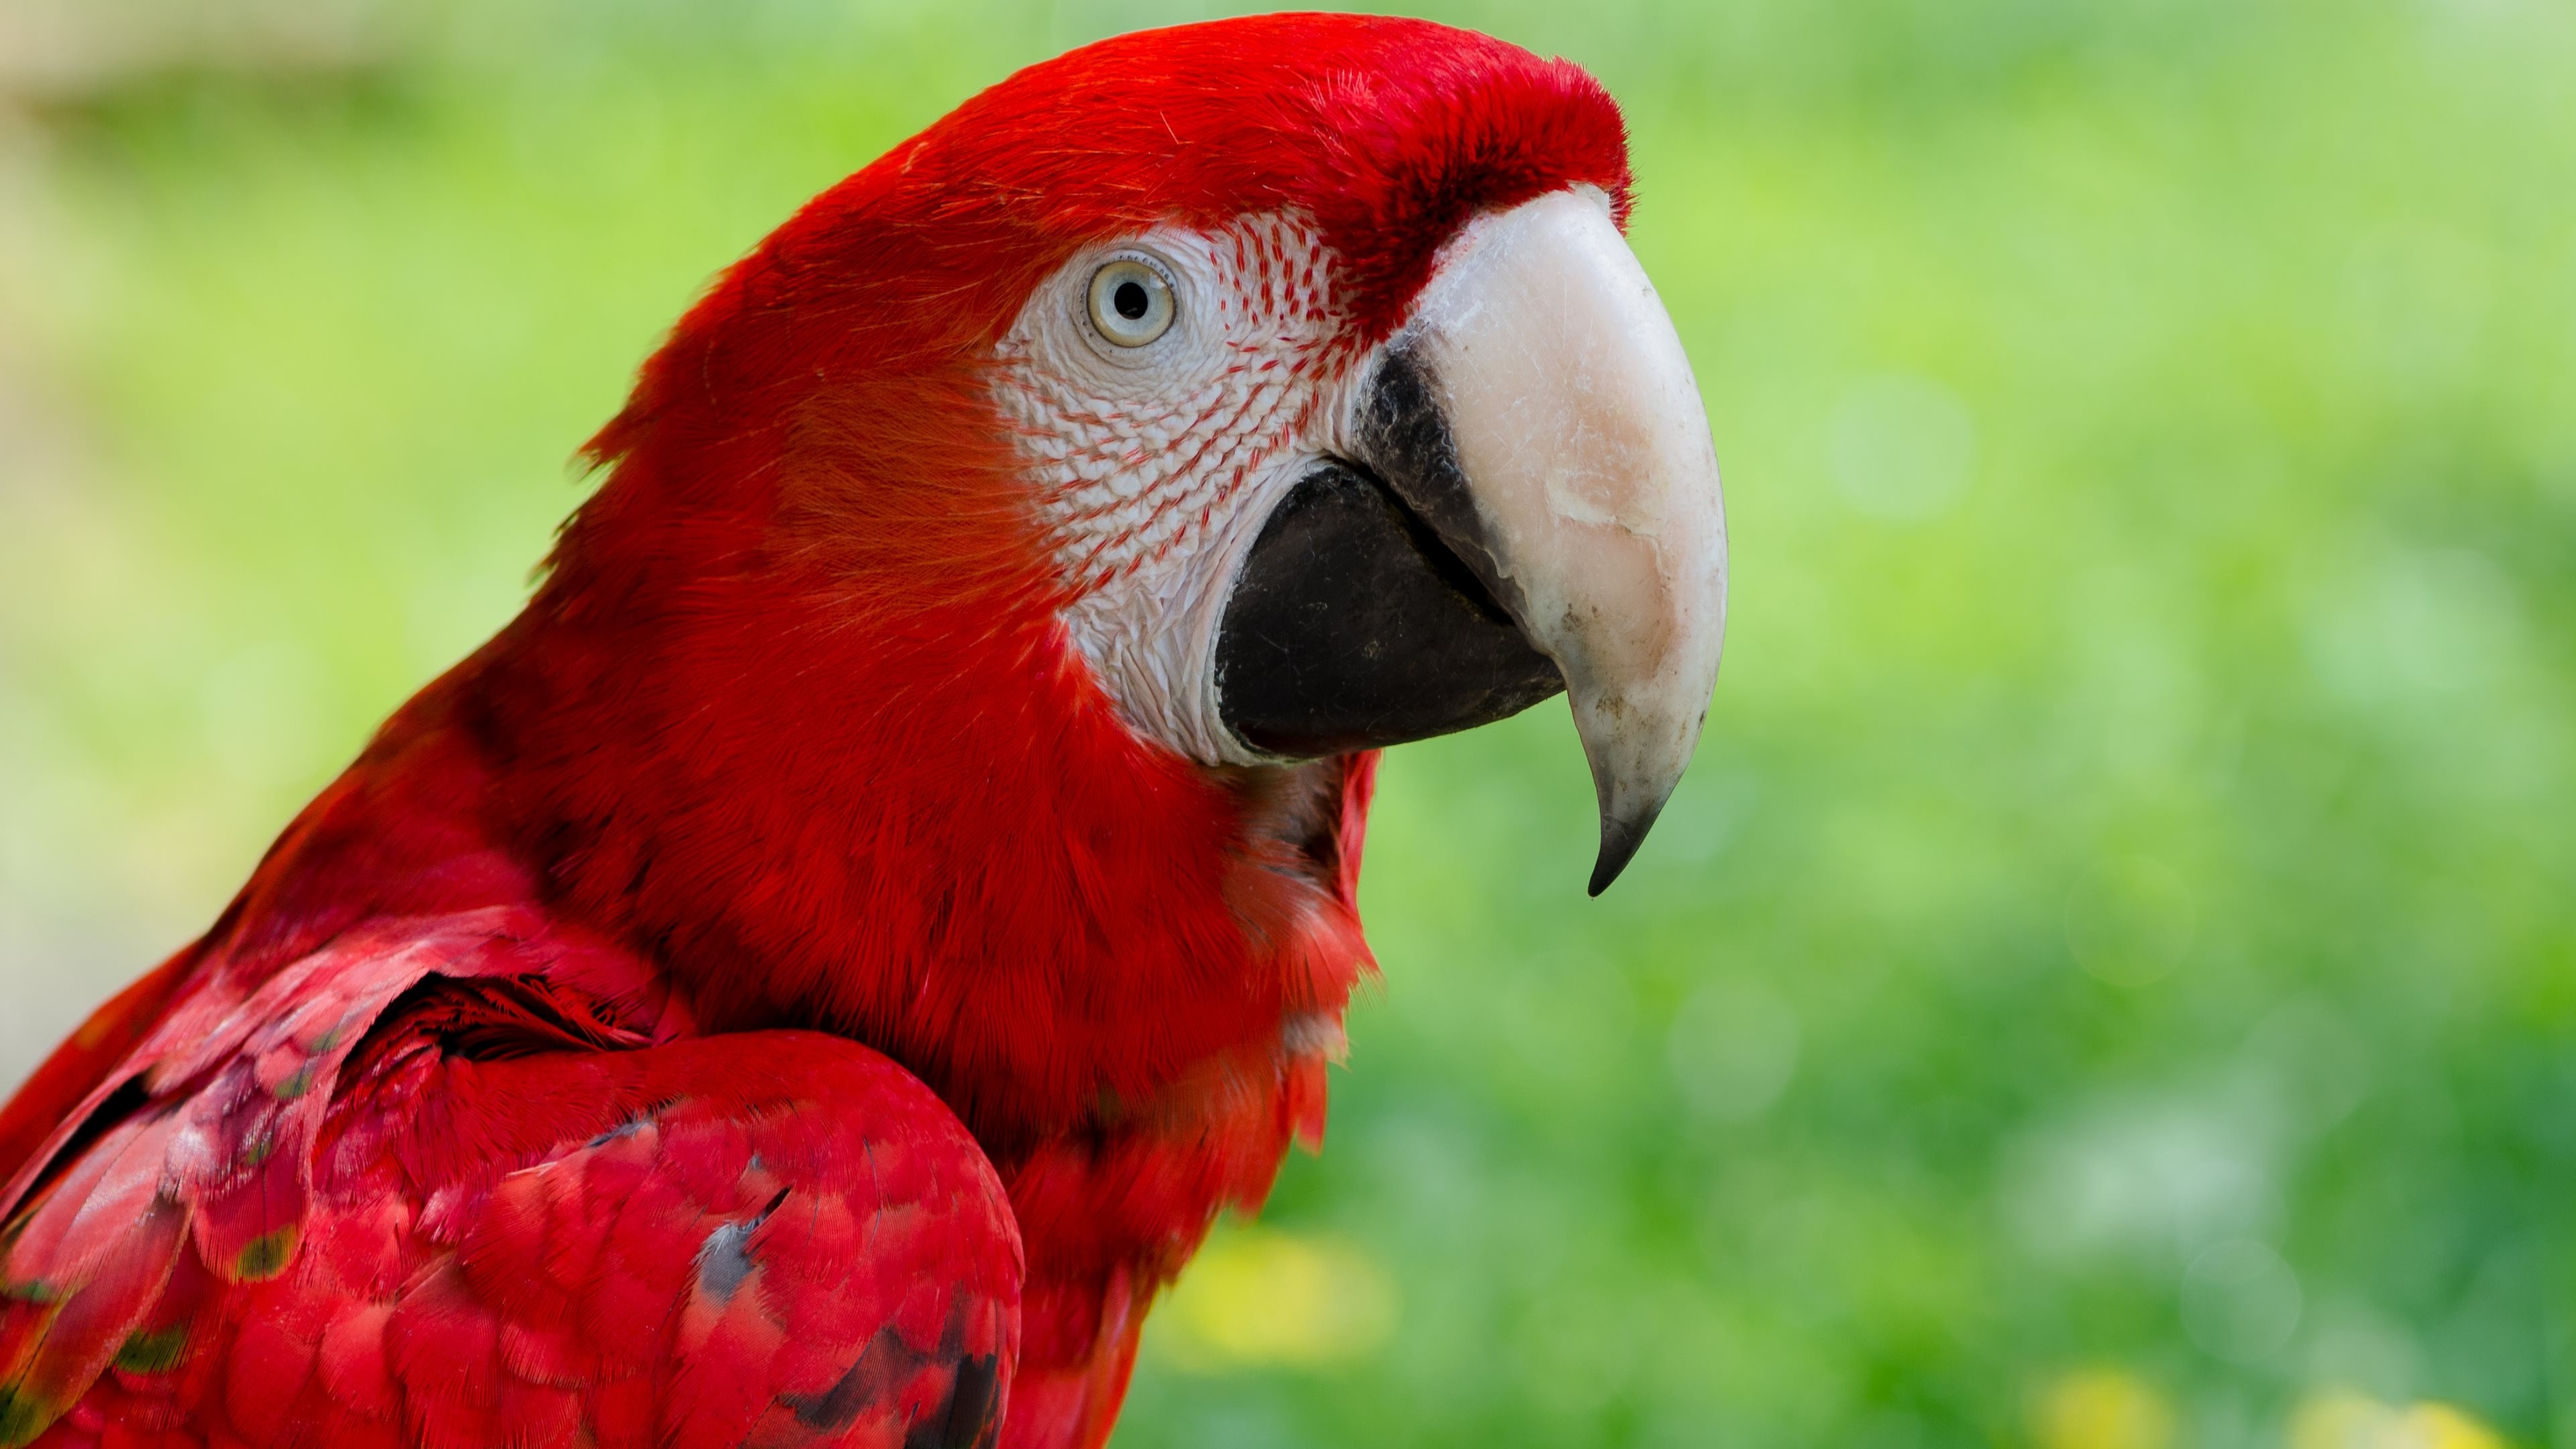 animals-macaws-nature-closeup-birds-parrot-wallpapers-hd-desktop